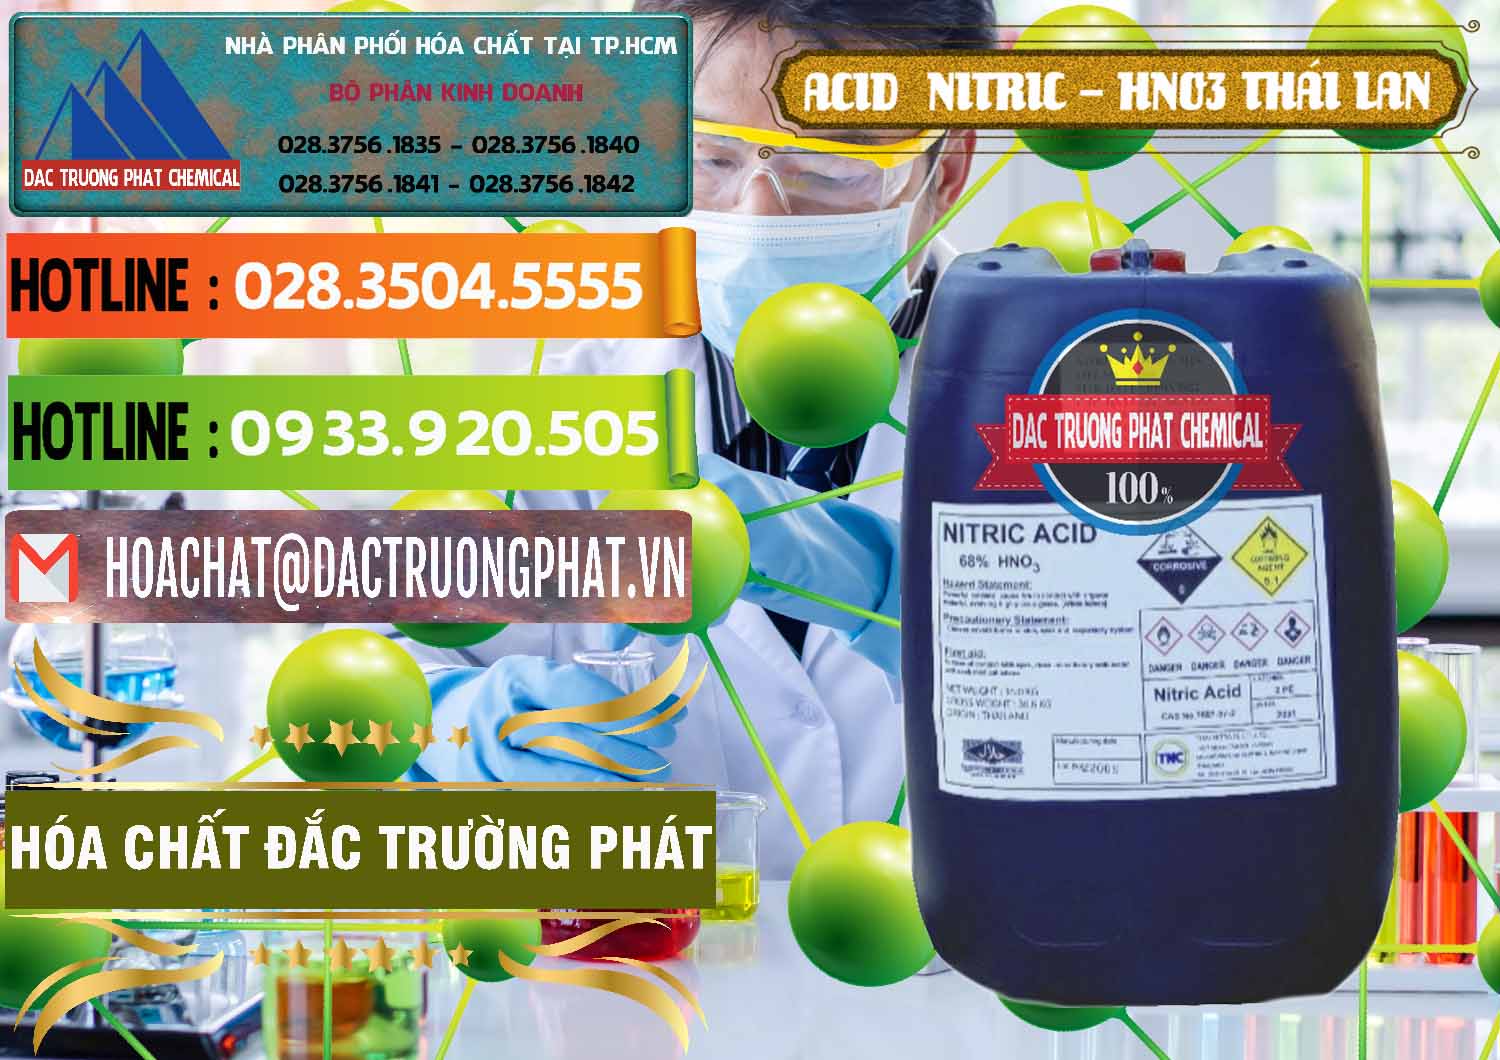 Nơi nhập khẩu và bán Acid Nitric – Axit Nitric HNO3 Thái Lan Thailand - 0344 - Cty nhập khẩu và phân phối hóa chất tại TP.HCM - cungcaphoachat.com.vn